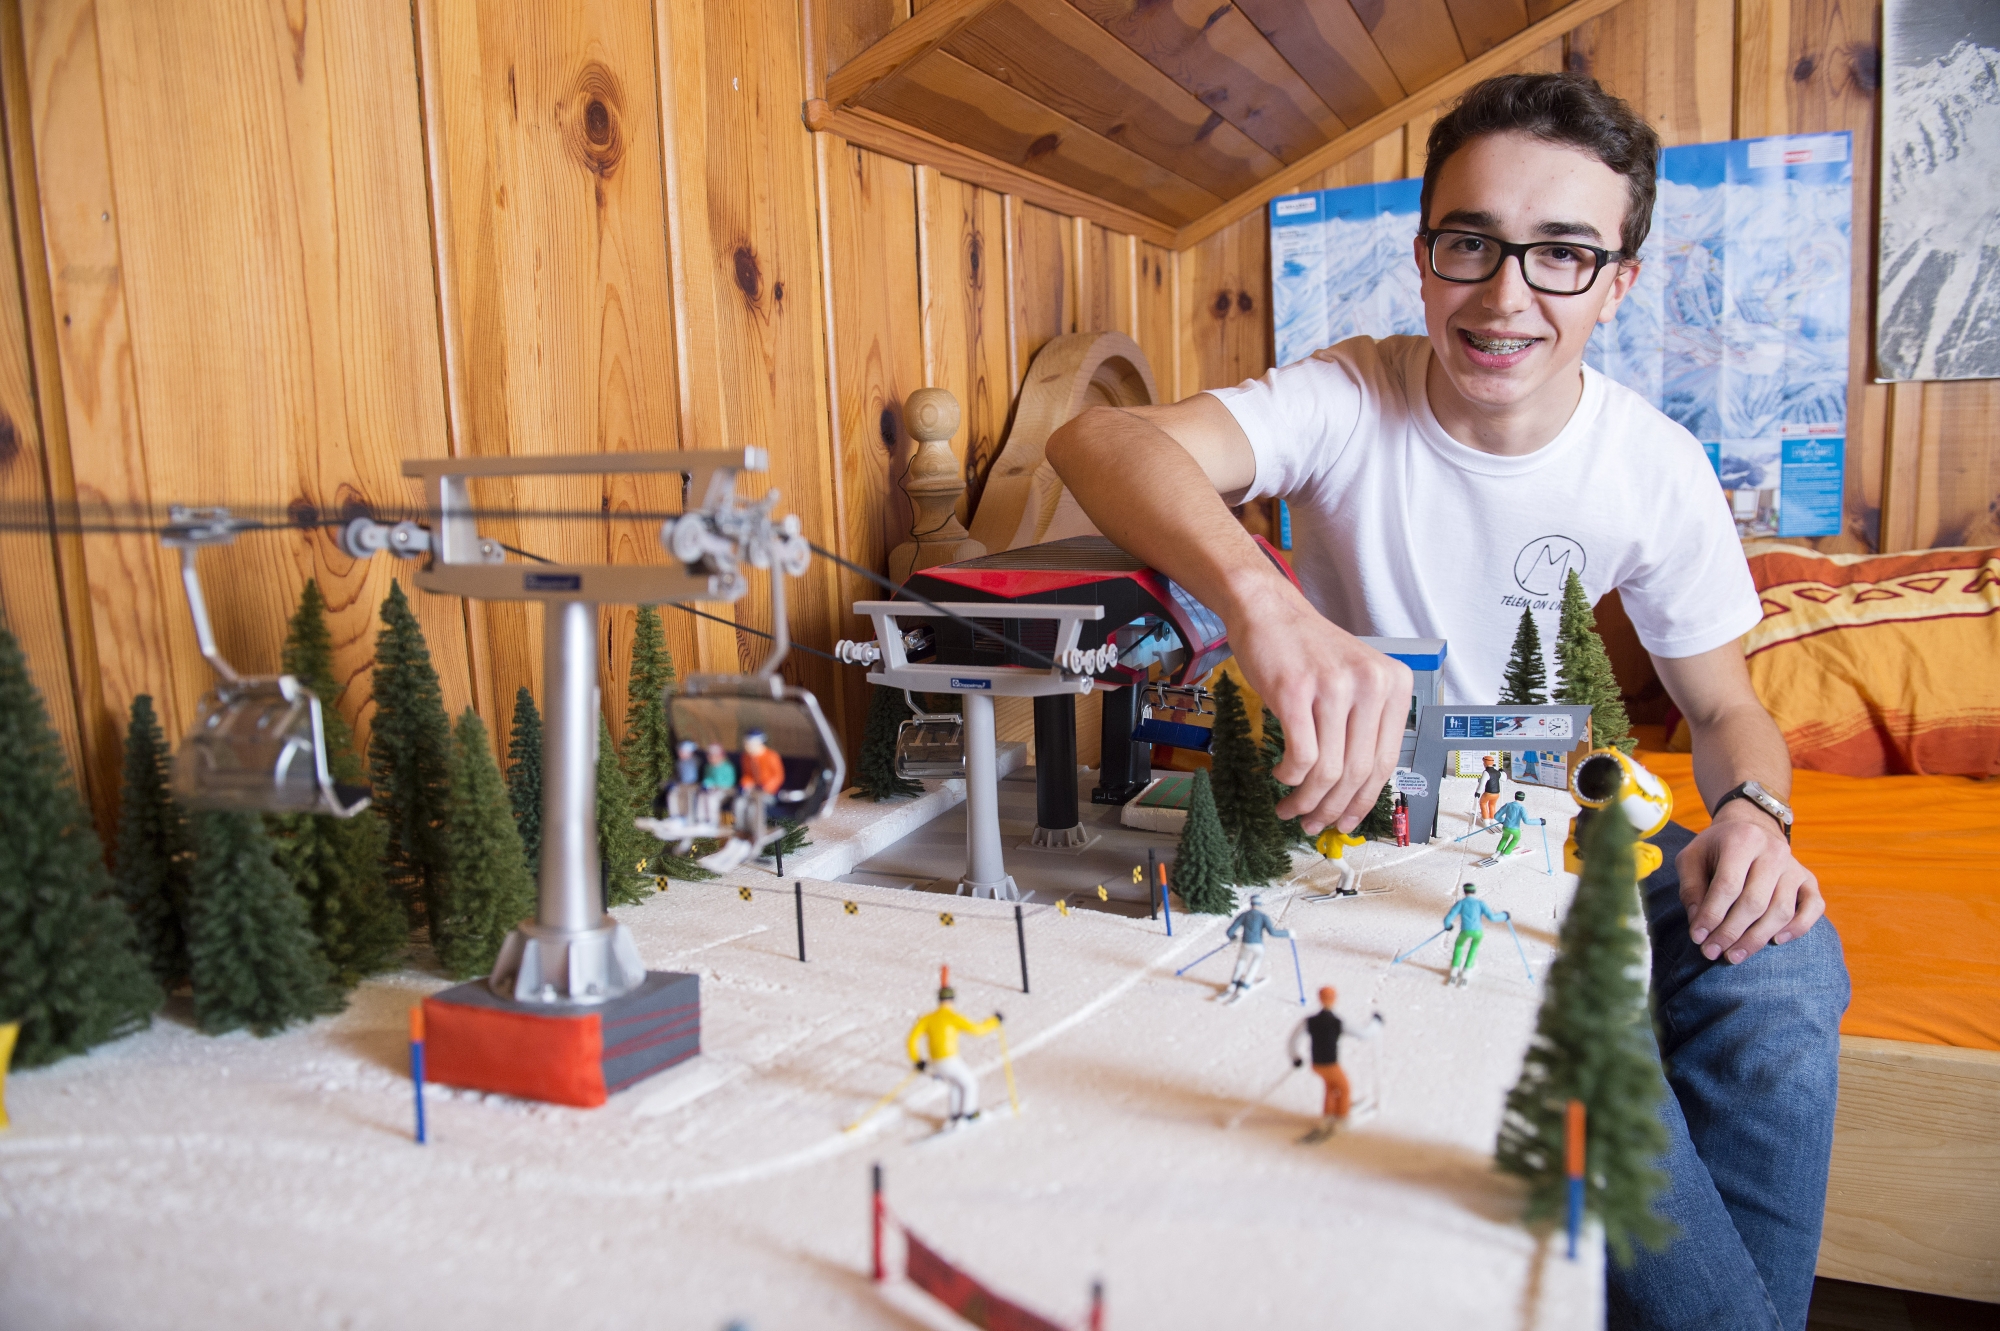 Apprenti mécatronicien en remontées mécaniques, Mathias Hofmann ne se contente pas de développer les maquettes de sa propre station de ski dans sa chambre, il la gère également comme une vraie sur les réseaux sociaux.